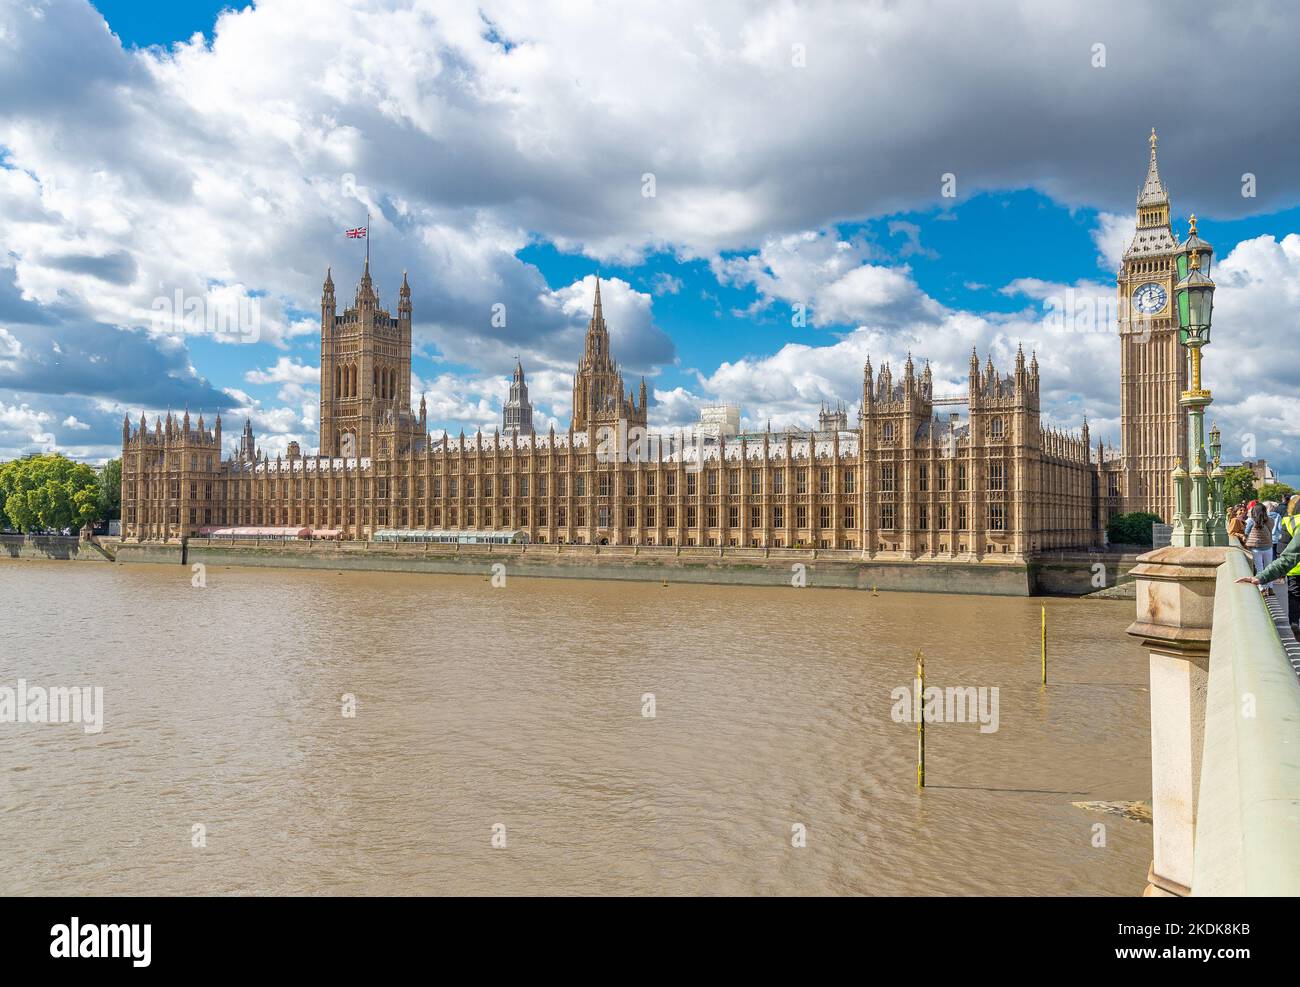 Le Palais de Westminster, chambres du Parlement, sur la rive nord de la Tamise dans la ville de Westminster, centre de Londres, Angleterre, Royaume-Uni Banque D'Images